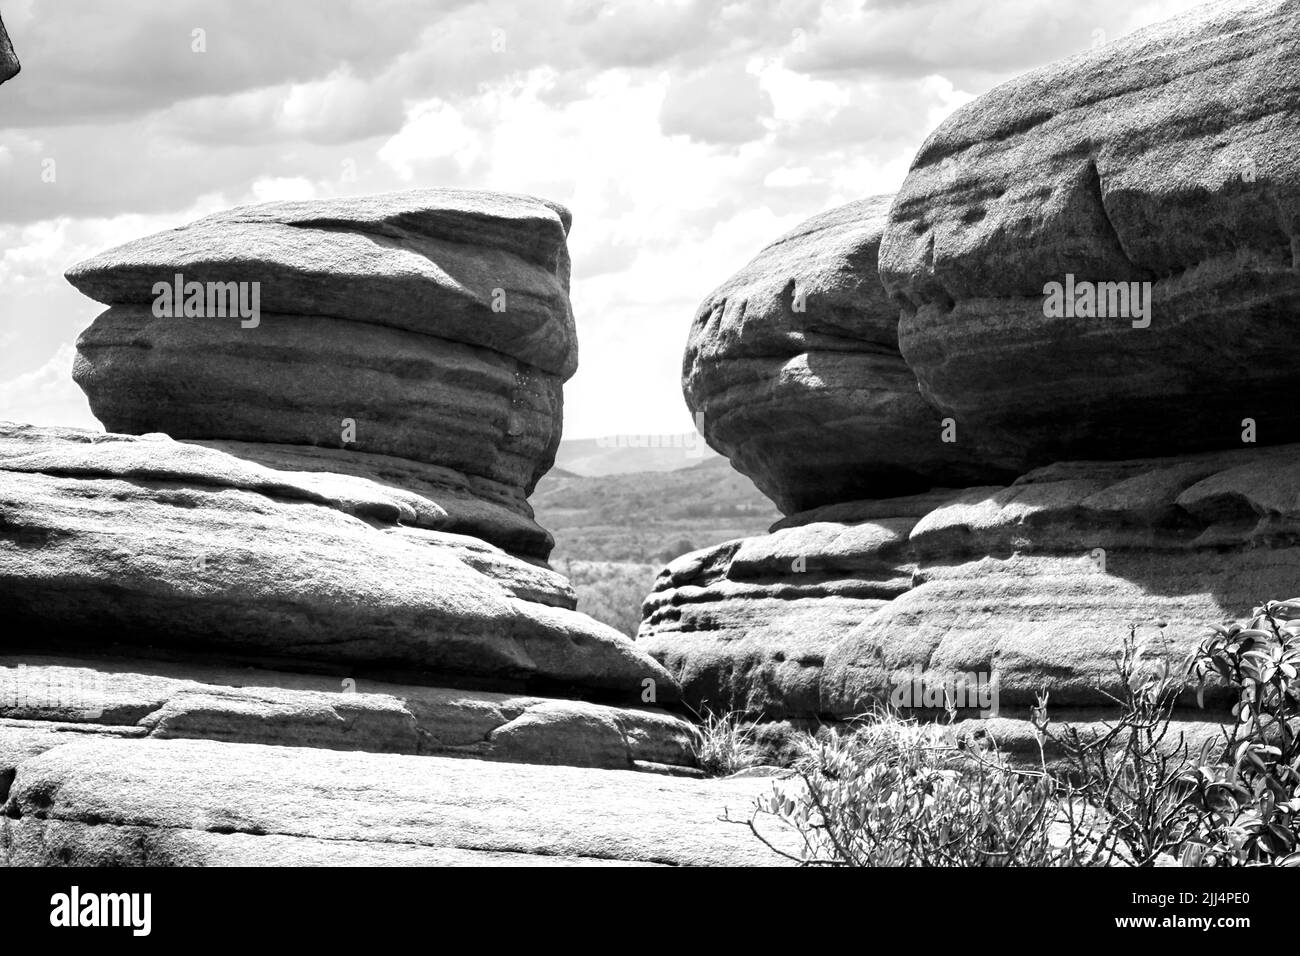 Rocas de cuarcita redondeadas y desgastadas en las montañas Magaliesberg de Sudáfrica en blanco y negro Foto de stock